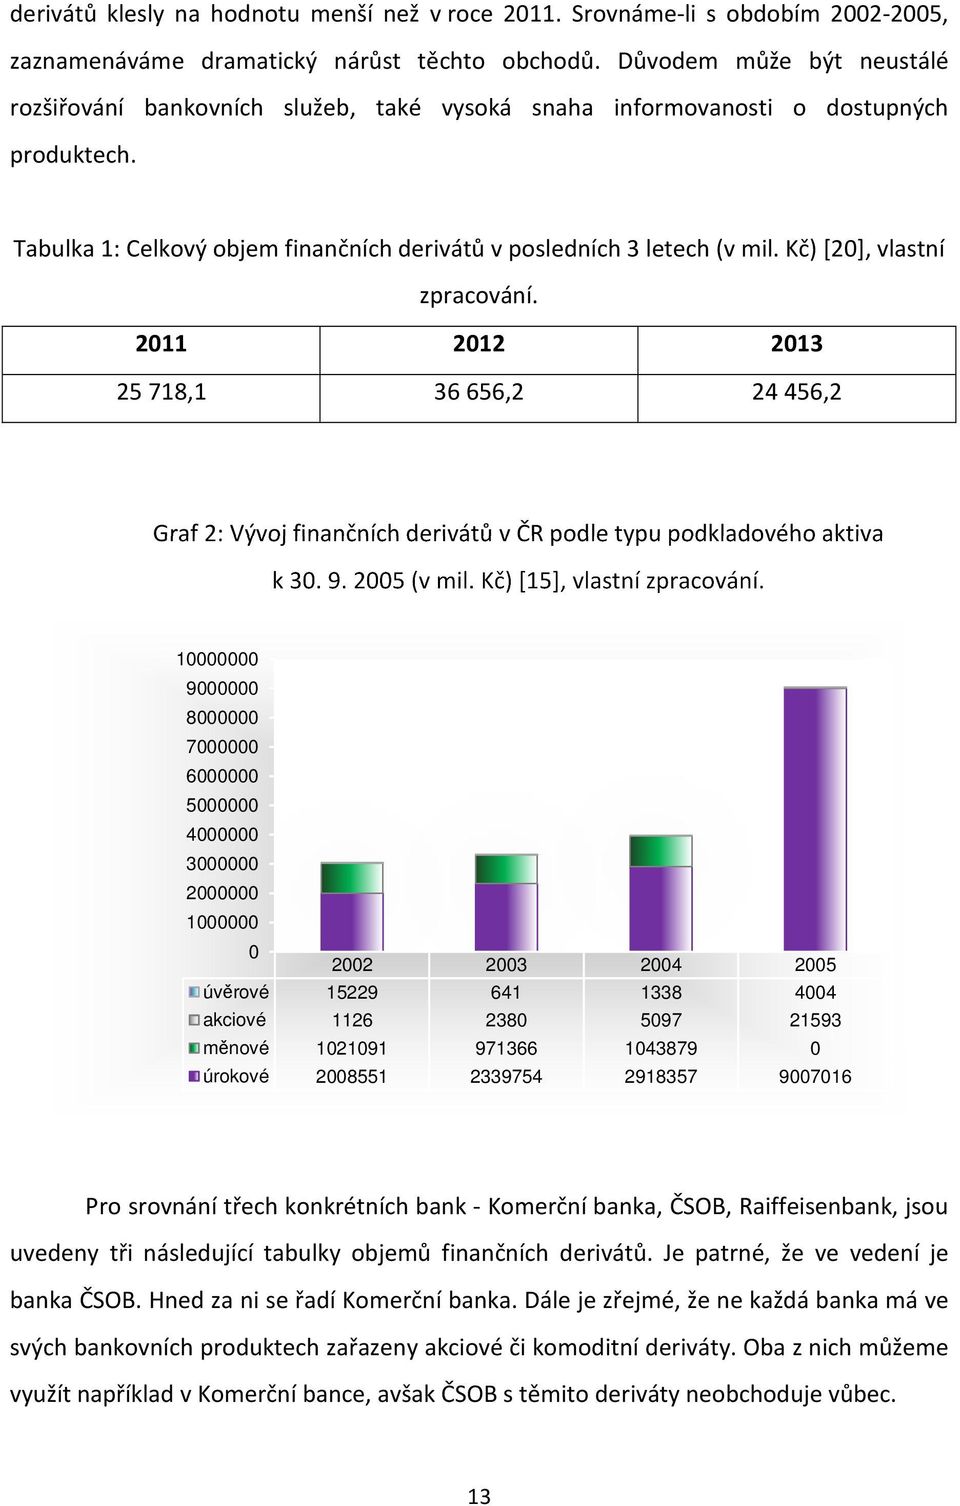 Kč) [20], vlastní zpracování. 2011 2012 2013 25 718,1 36 656,2 24 456,2 Graf 2: Vývoj finančních derivátů v ČR podle typu podkladového aktiva k 30. 9. 2005 (v mil. Kč) [15], vlastní zpracování.